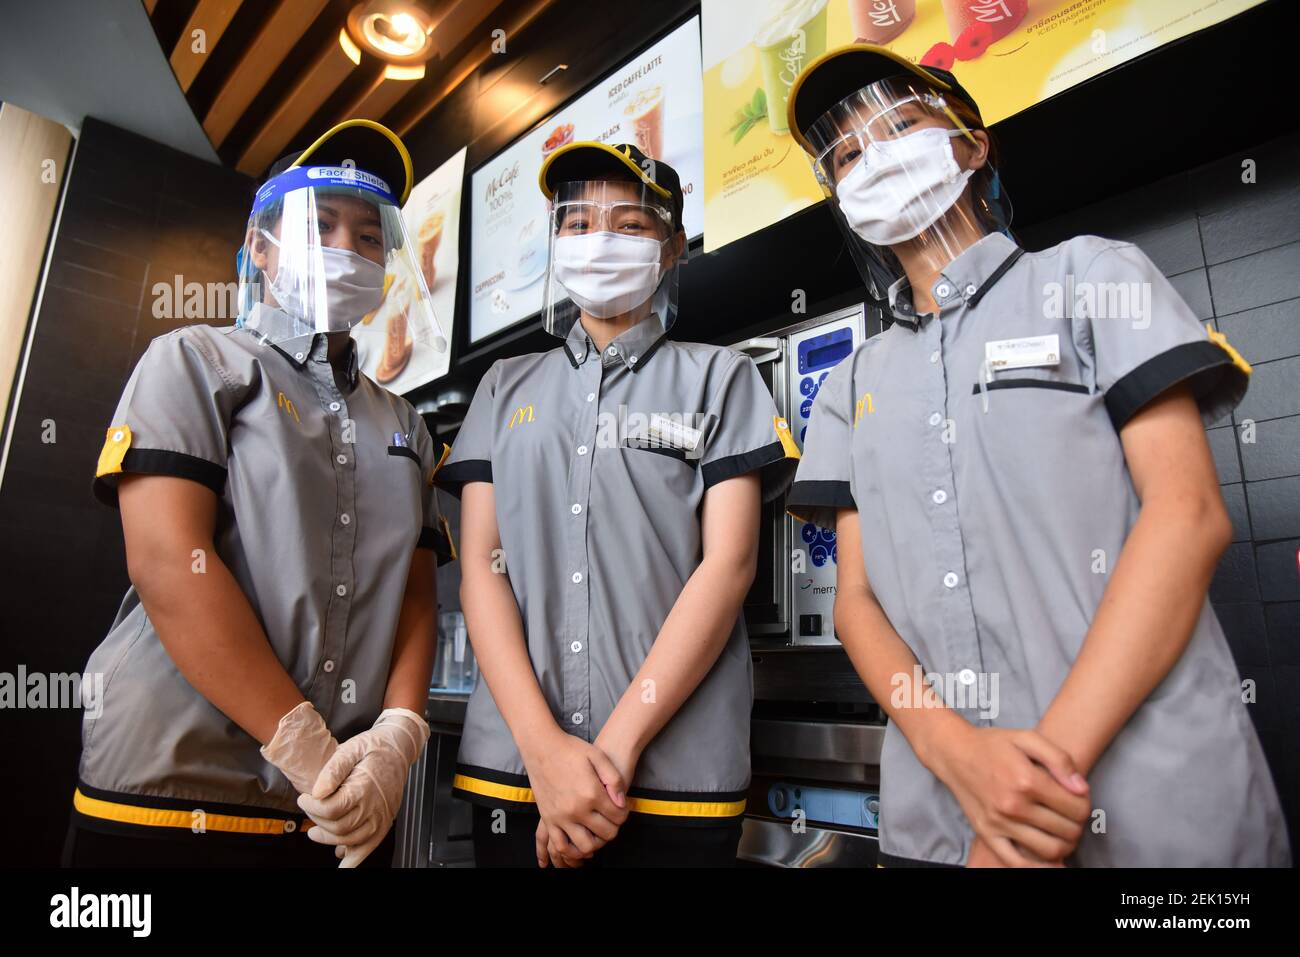 Par mesure de précaution, les employés de McDonald's portent un masque de  protection et un écran facial pendant la pandémie Covid-19. Le restaurant  McDonald's de Bangkok propose uniquement des plats à emporter